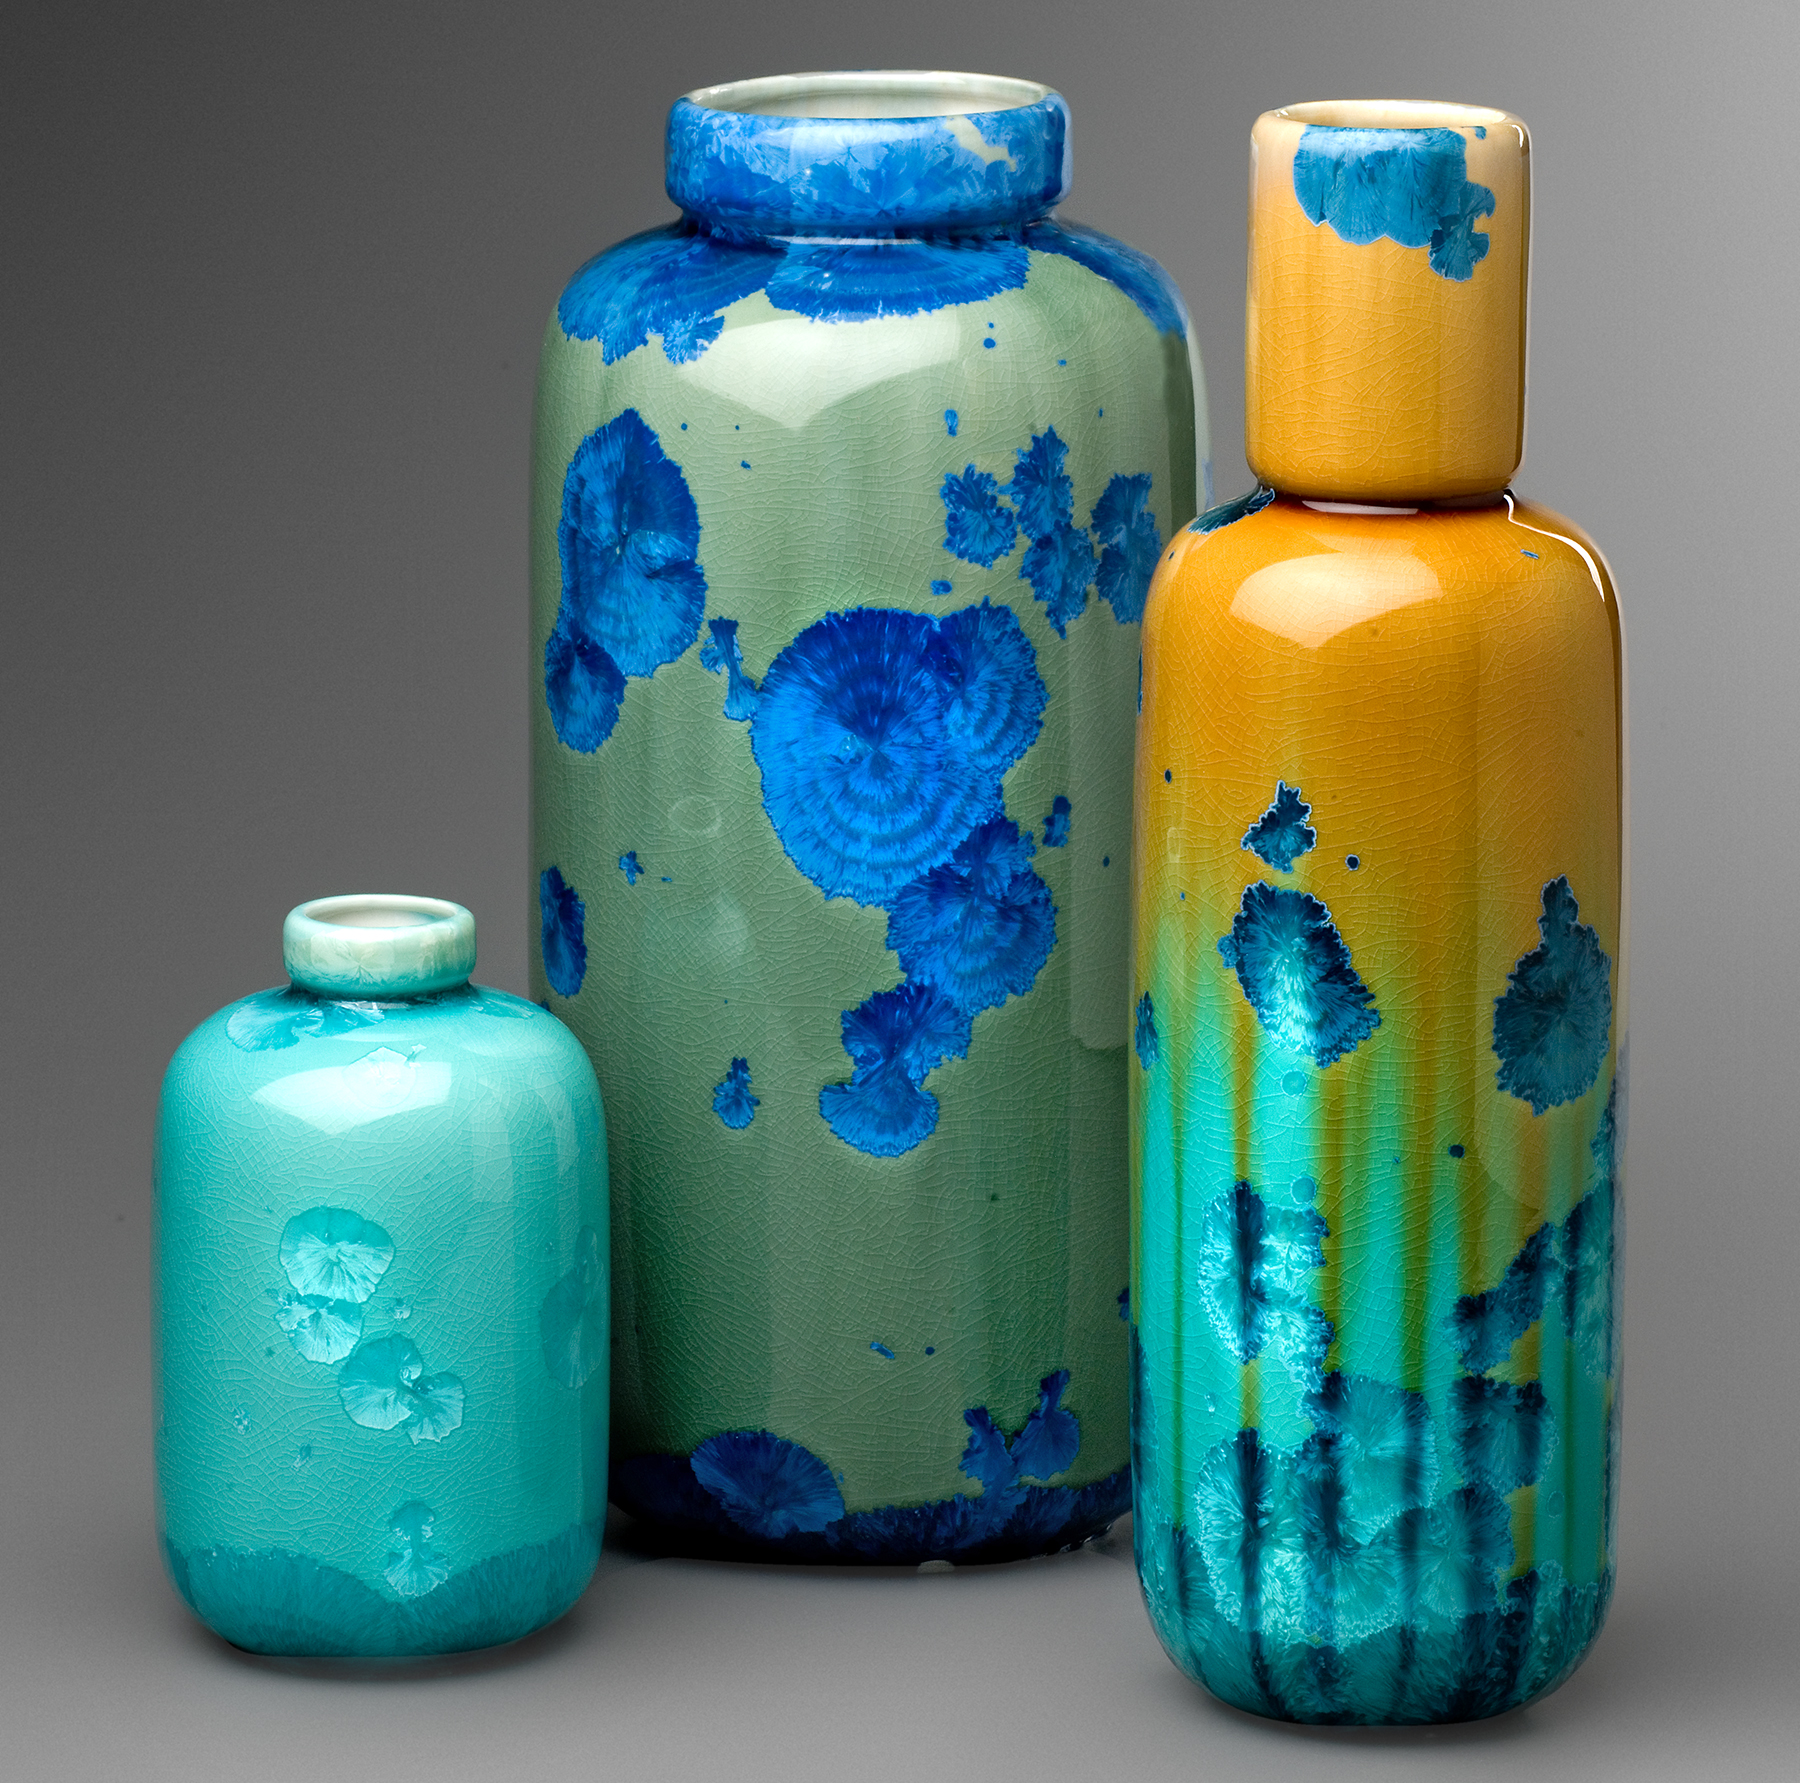 Milan Pekař – Krystalické vázy